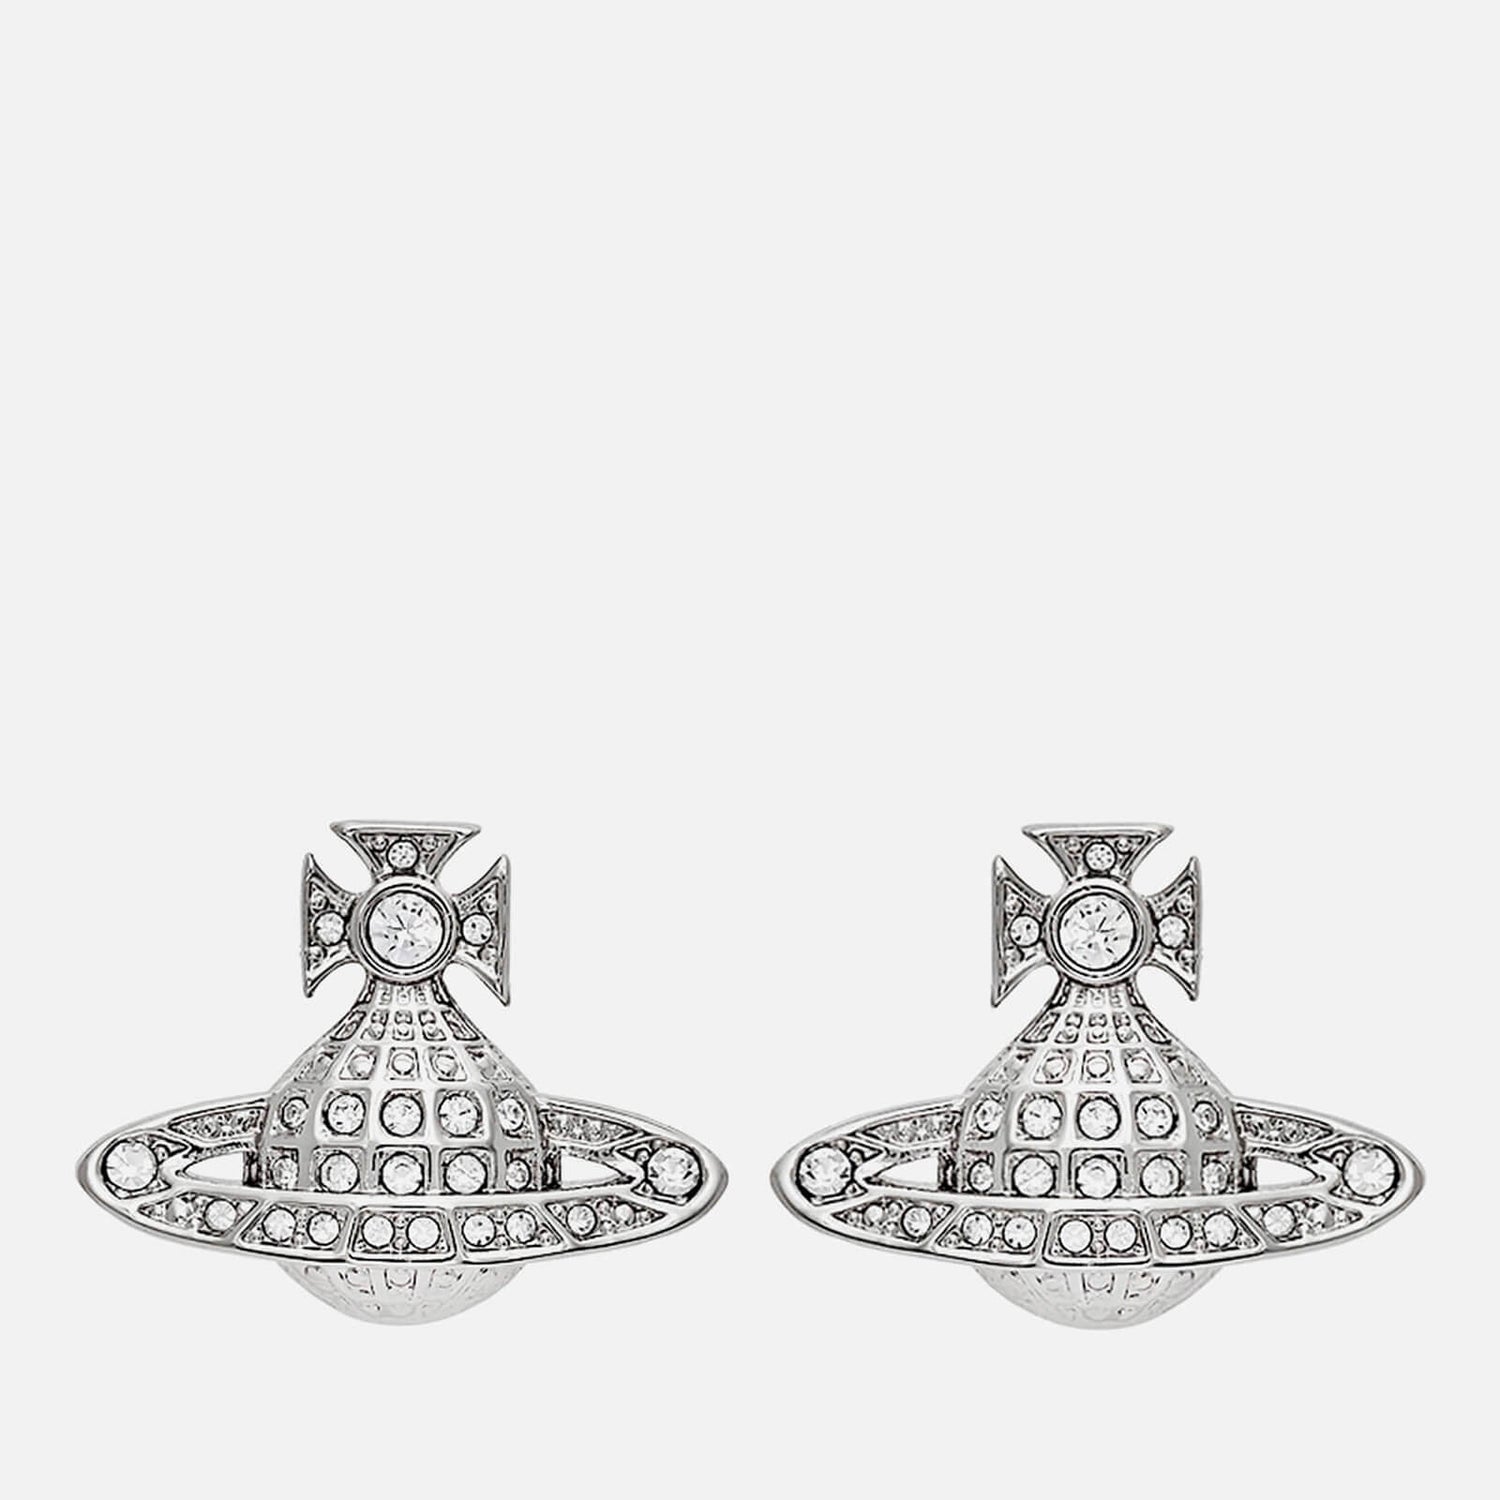 Vivienne Westwood Women's Minnie Bas Relief Earrings - Platinum/Crystal